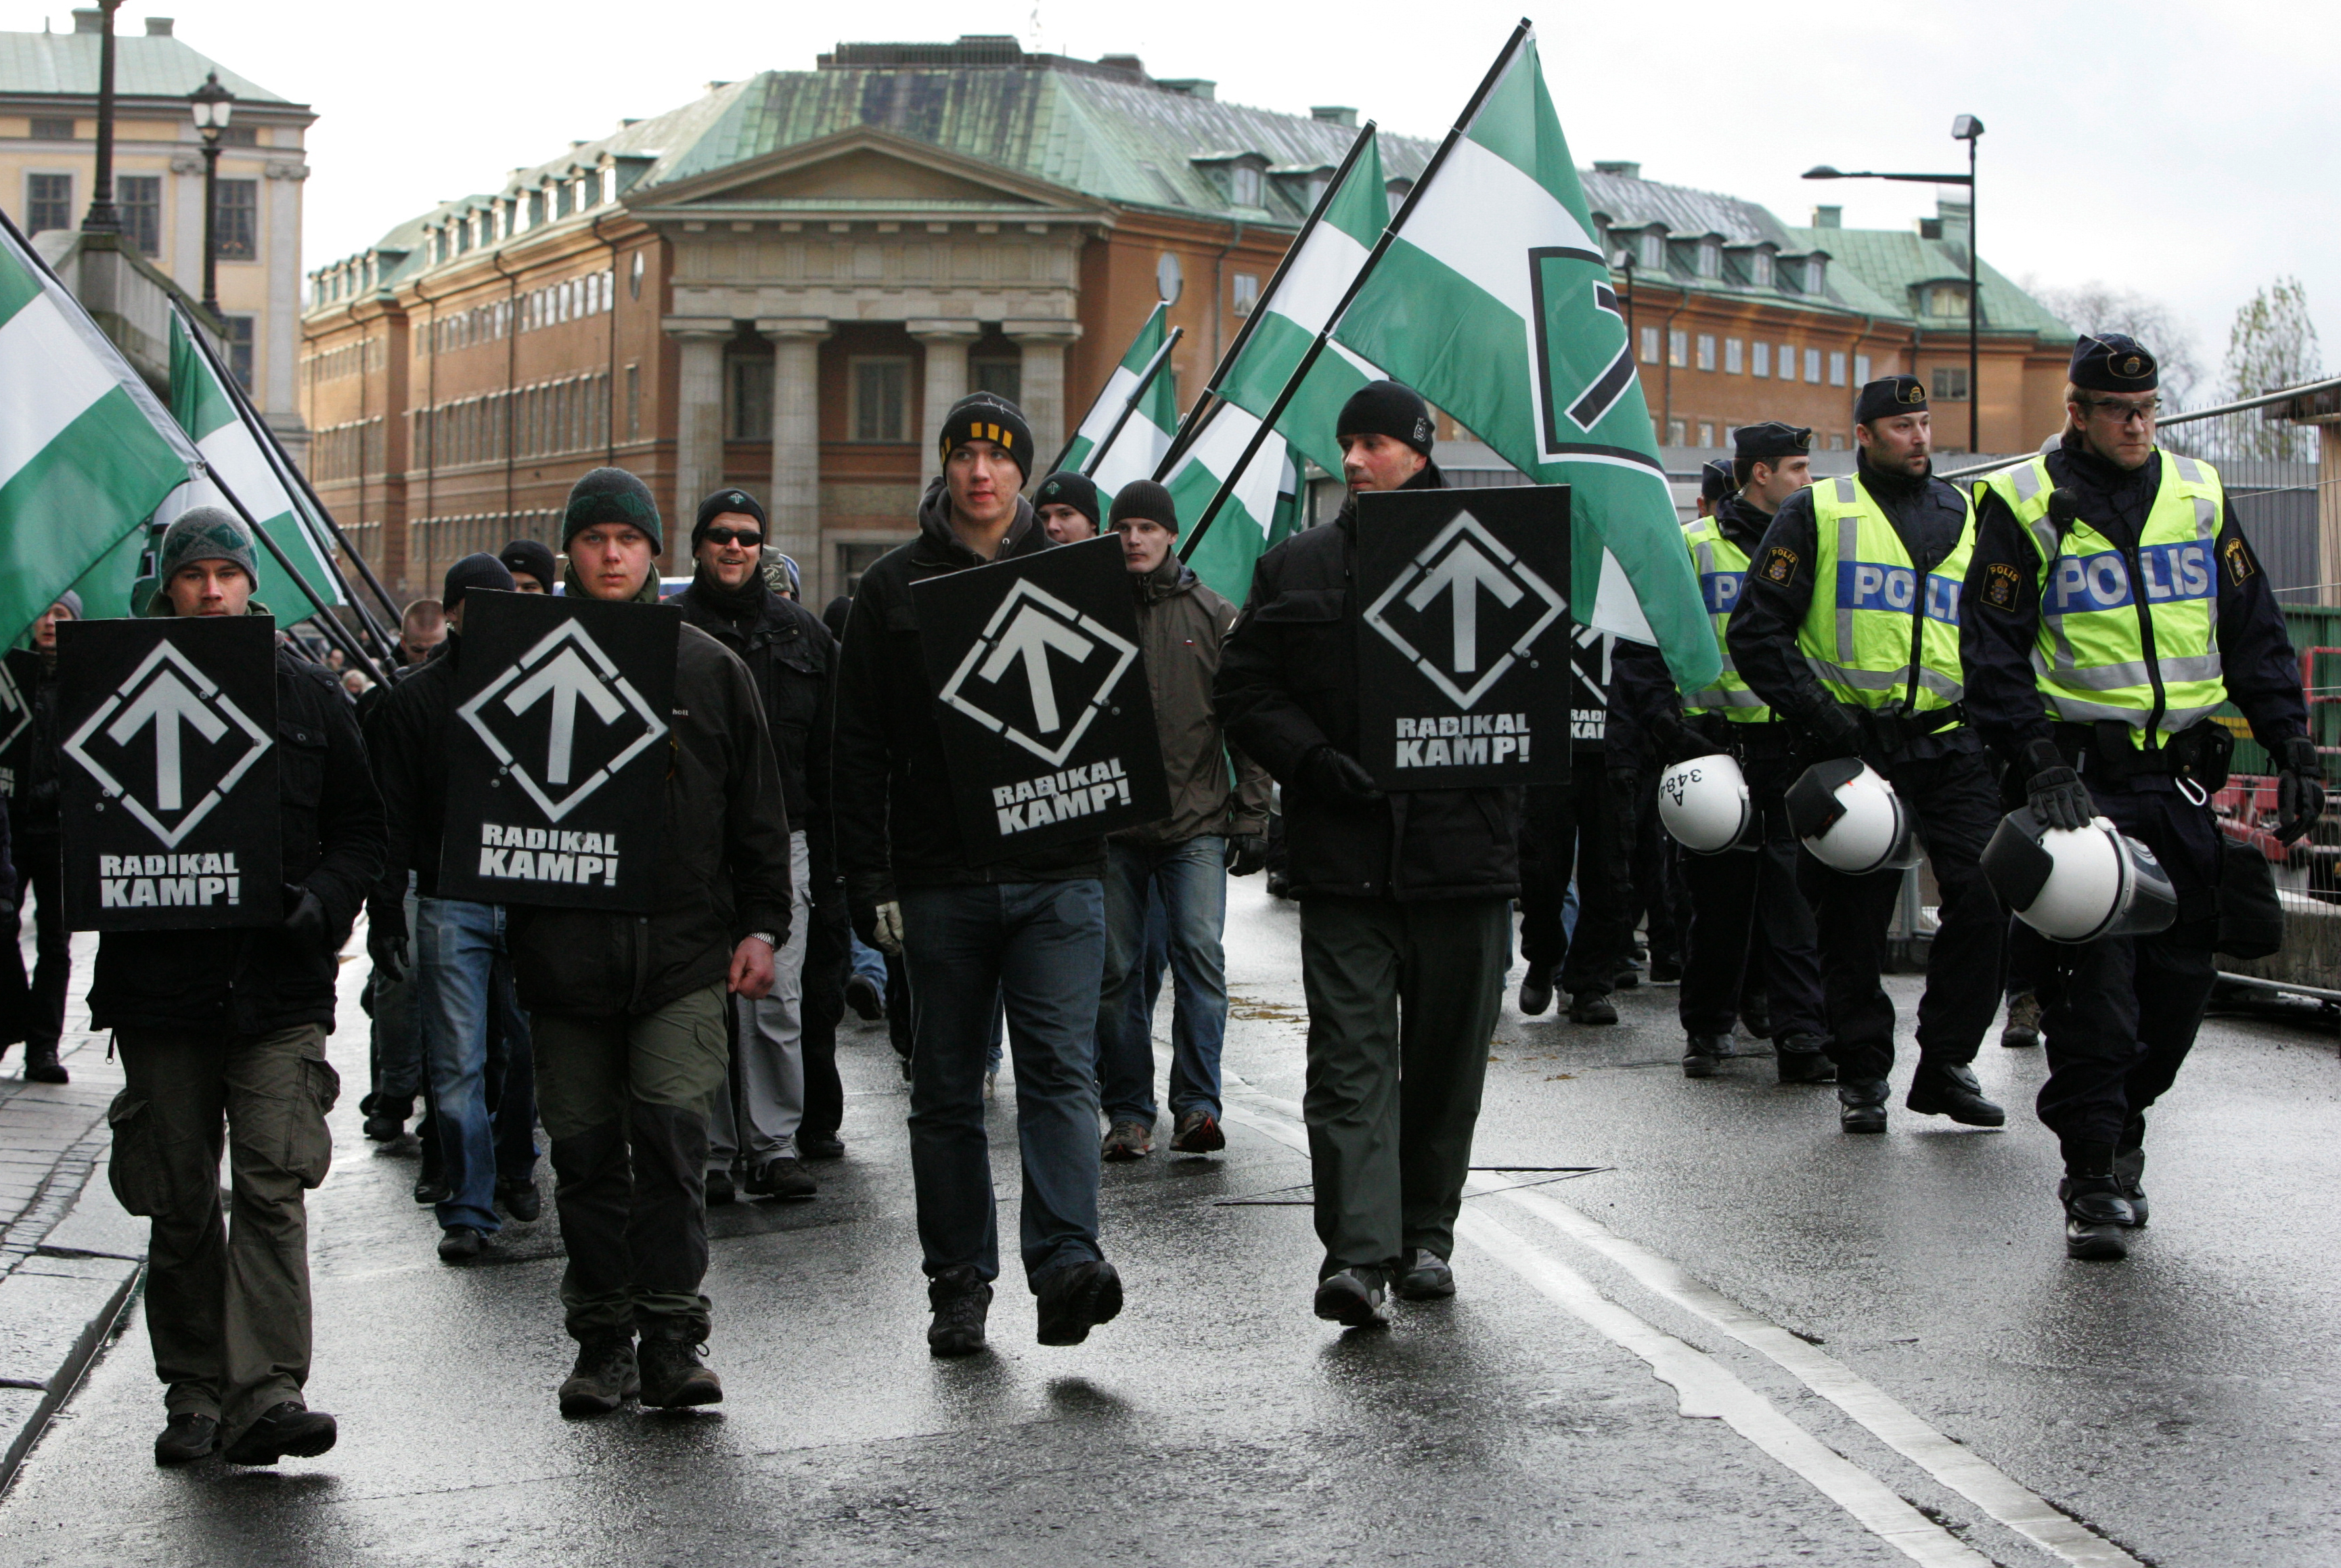 Svenska motståndsrörelsen är också ett parti med nazistiska åsikter.